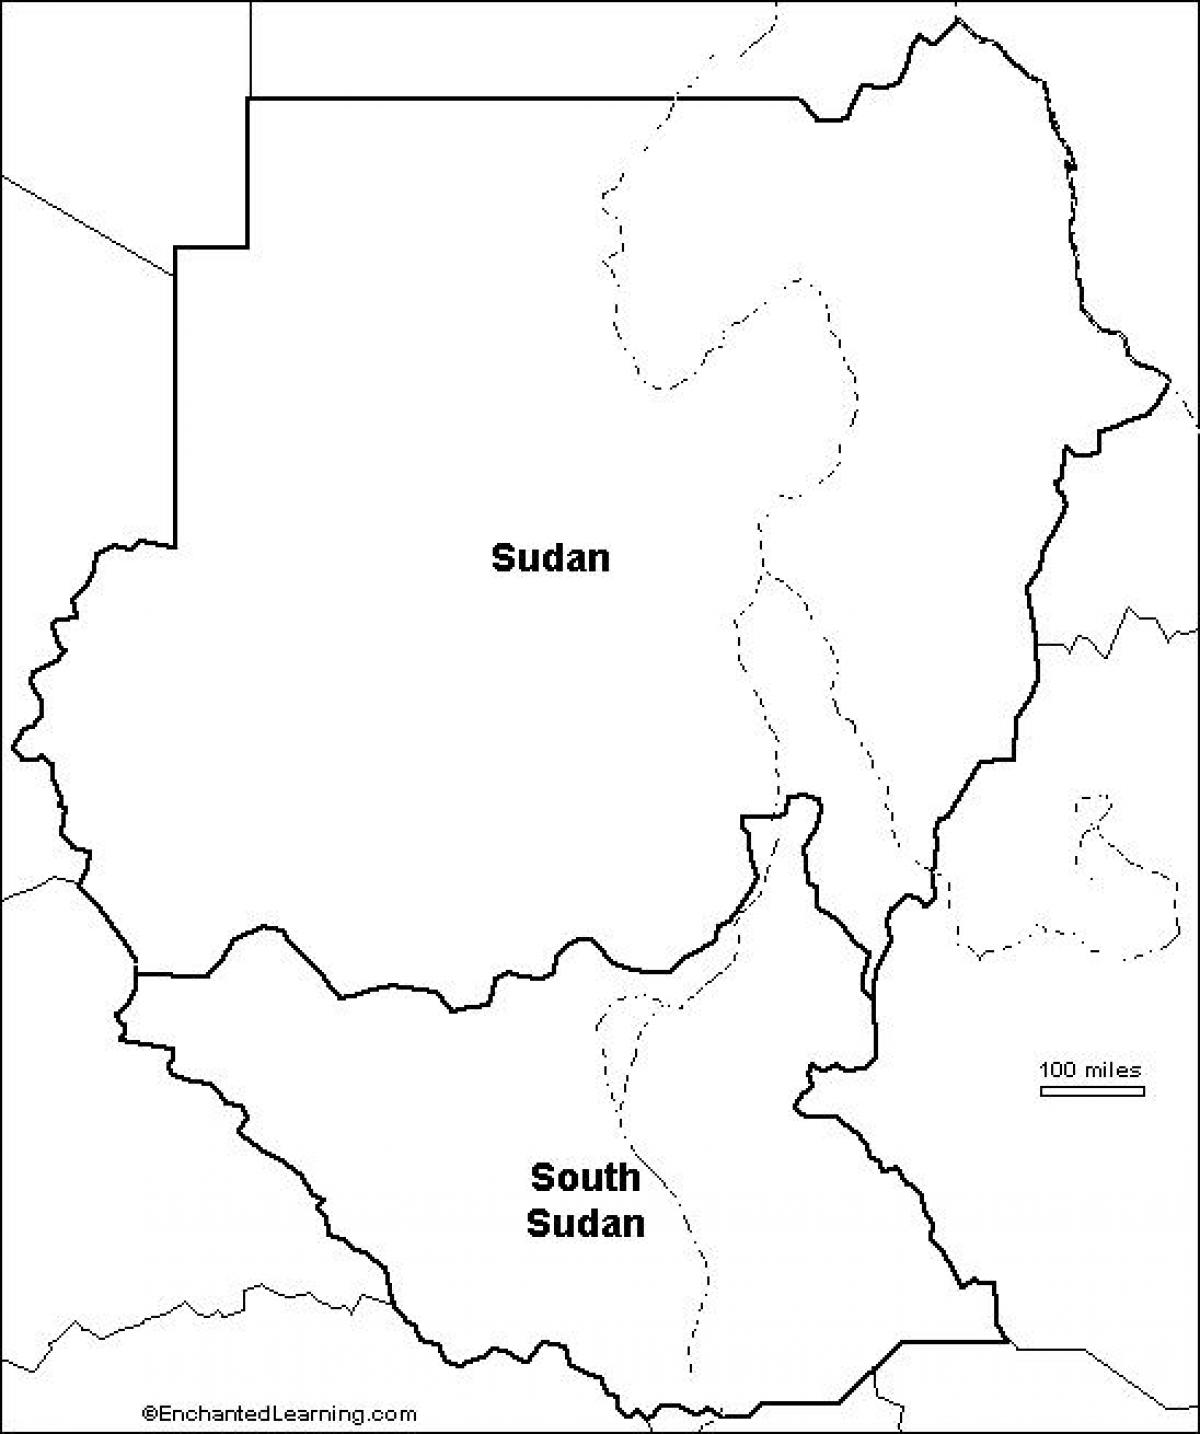 Kart over Sudan blank